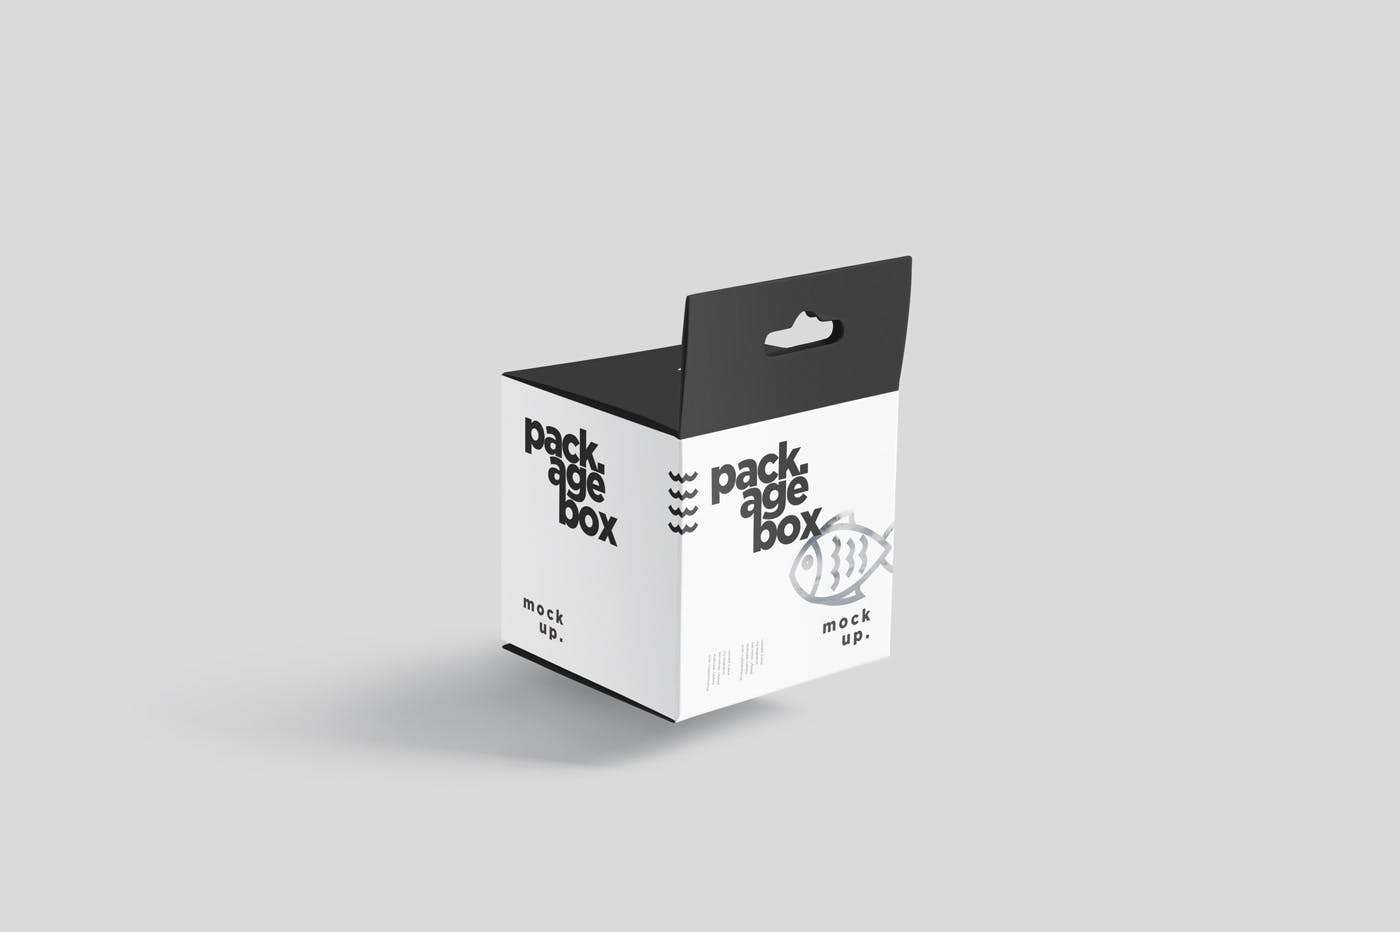 挂耳式方形产品包装盒样机模板 Package Box Mockup Set – Square With Hanger插图(5)